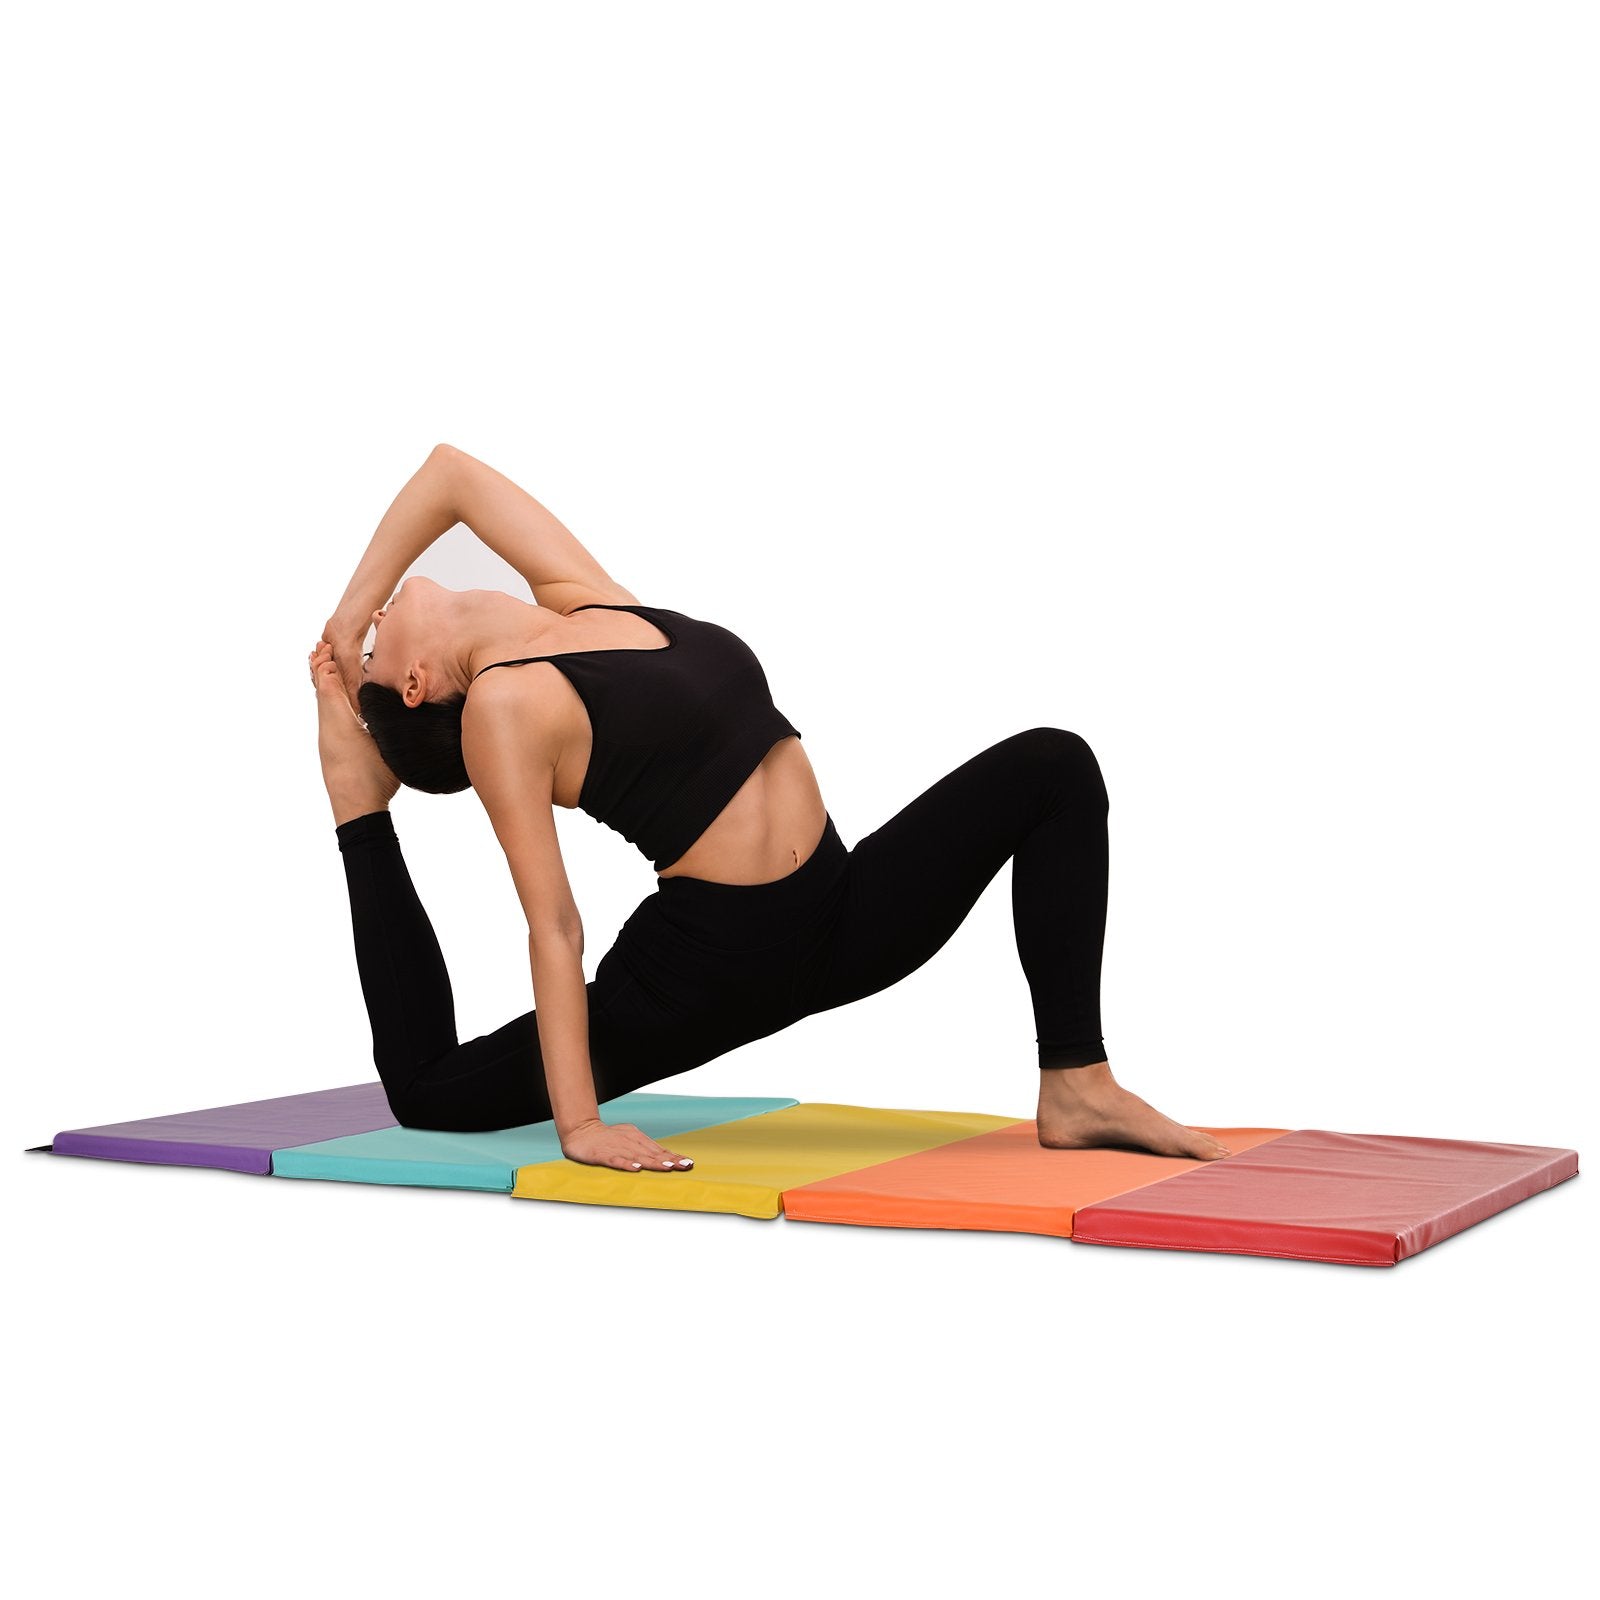 EASYCOMFORT Tappetino Fitness/Yoga per Palestra e Casa, con 5 Pannelli  Colorati e Pieghevoli, Imbottitura in EPE, 195x76x3 cm